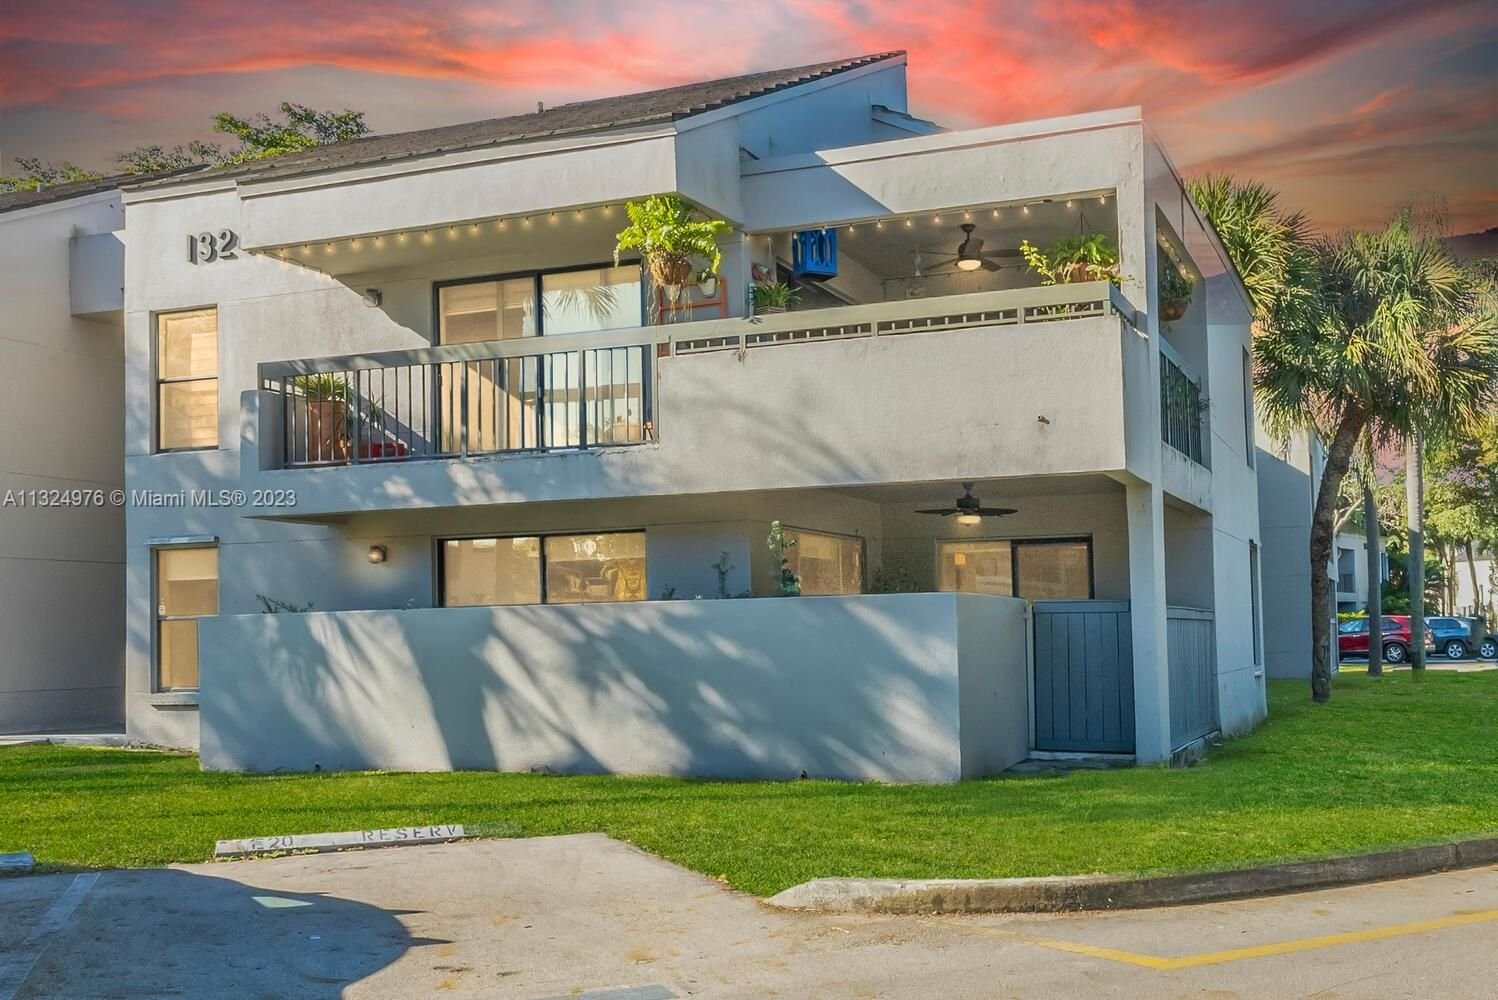 Real estate property located at 13240 88th Ln, Miami-Dade County, Miami, FL